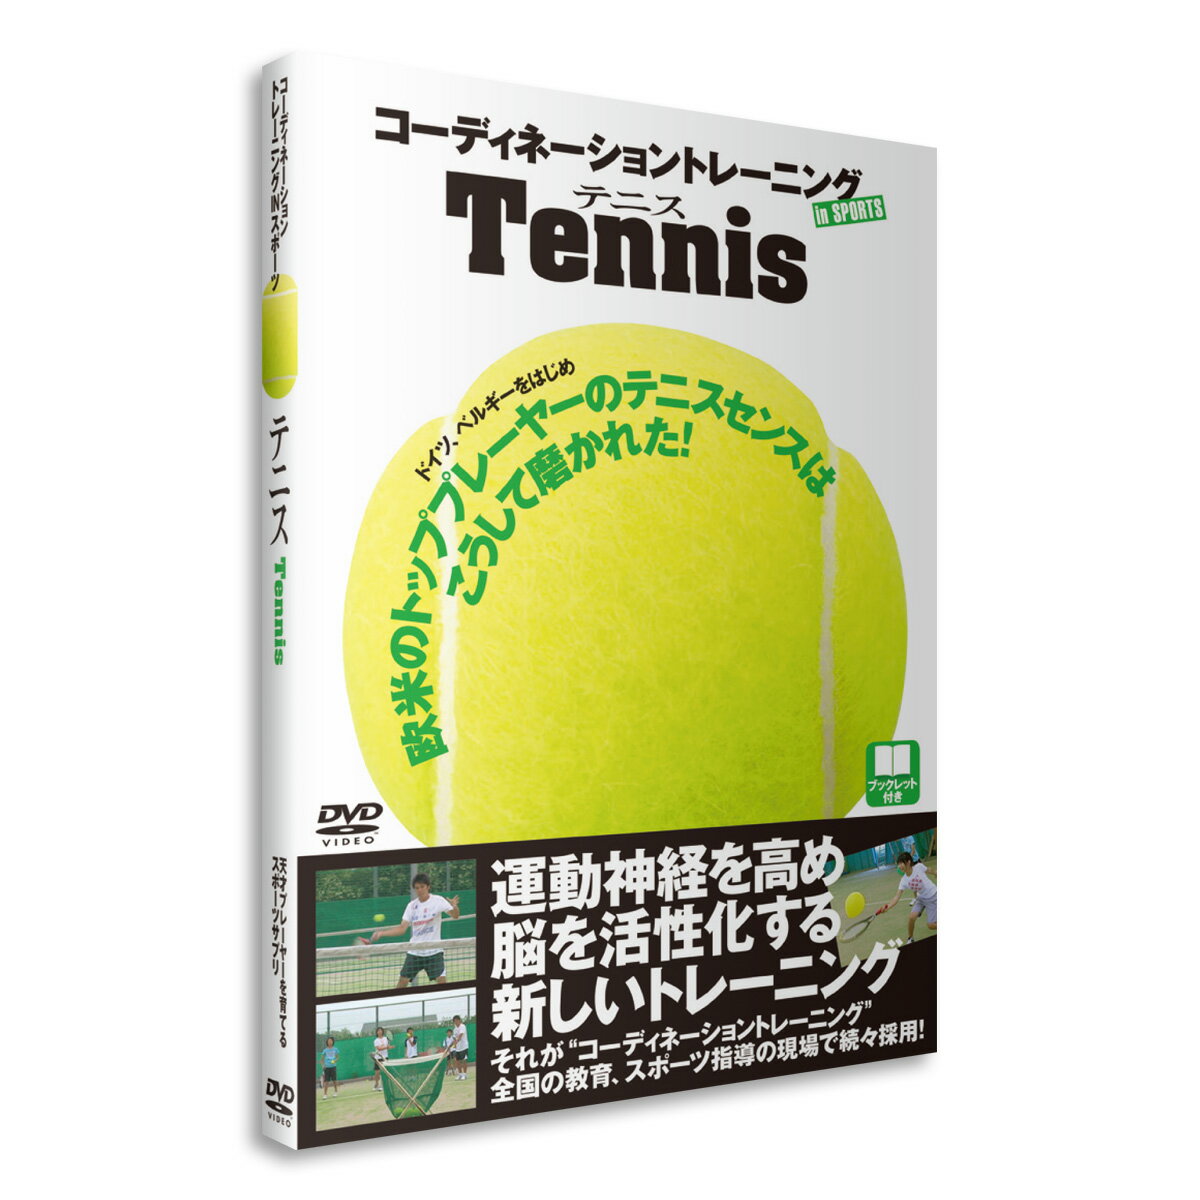 DVD（テニス） DVD 「コーディネーショントレーニングINスポーツ　テニス」蝶間林利男 指導 送料無料 キャンペーン